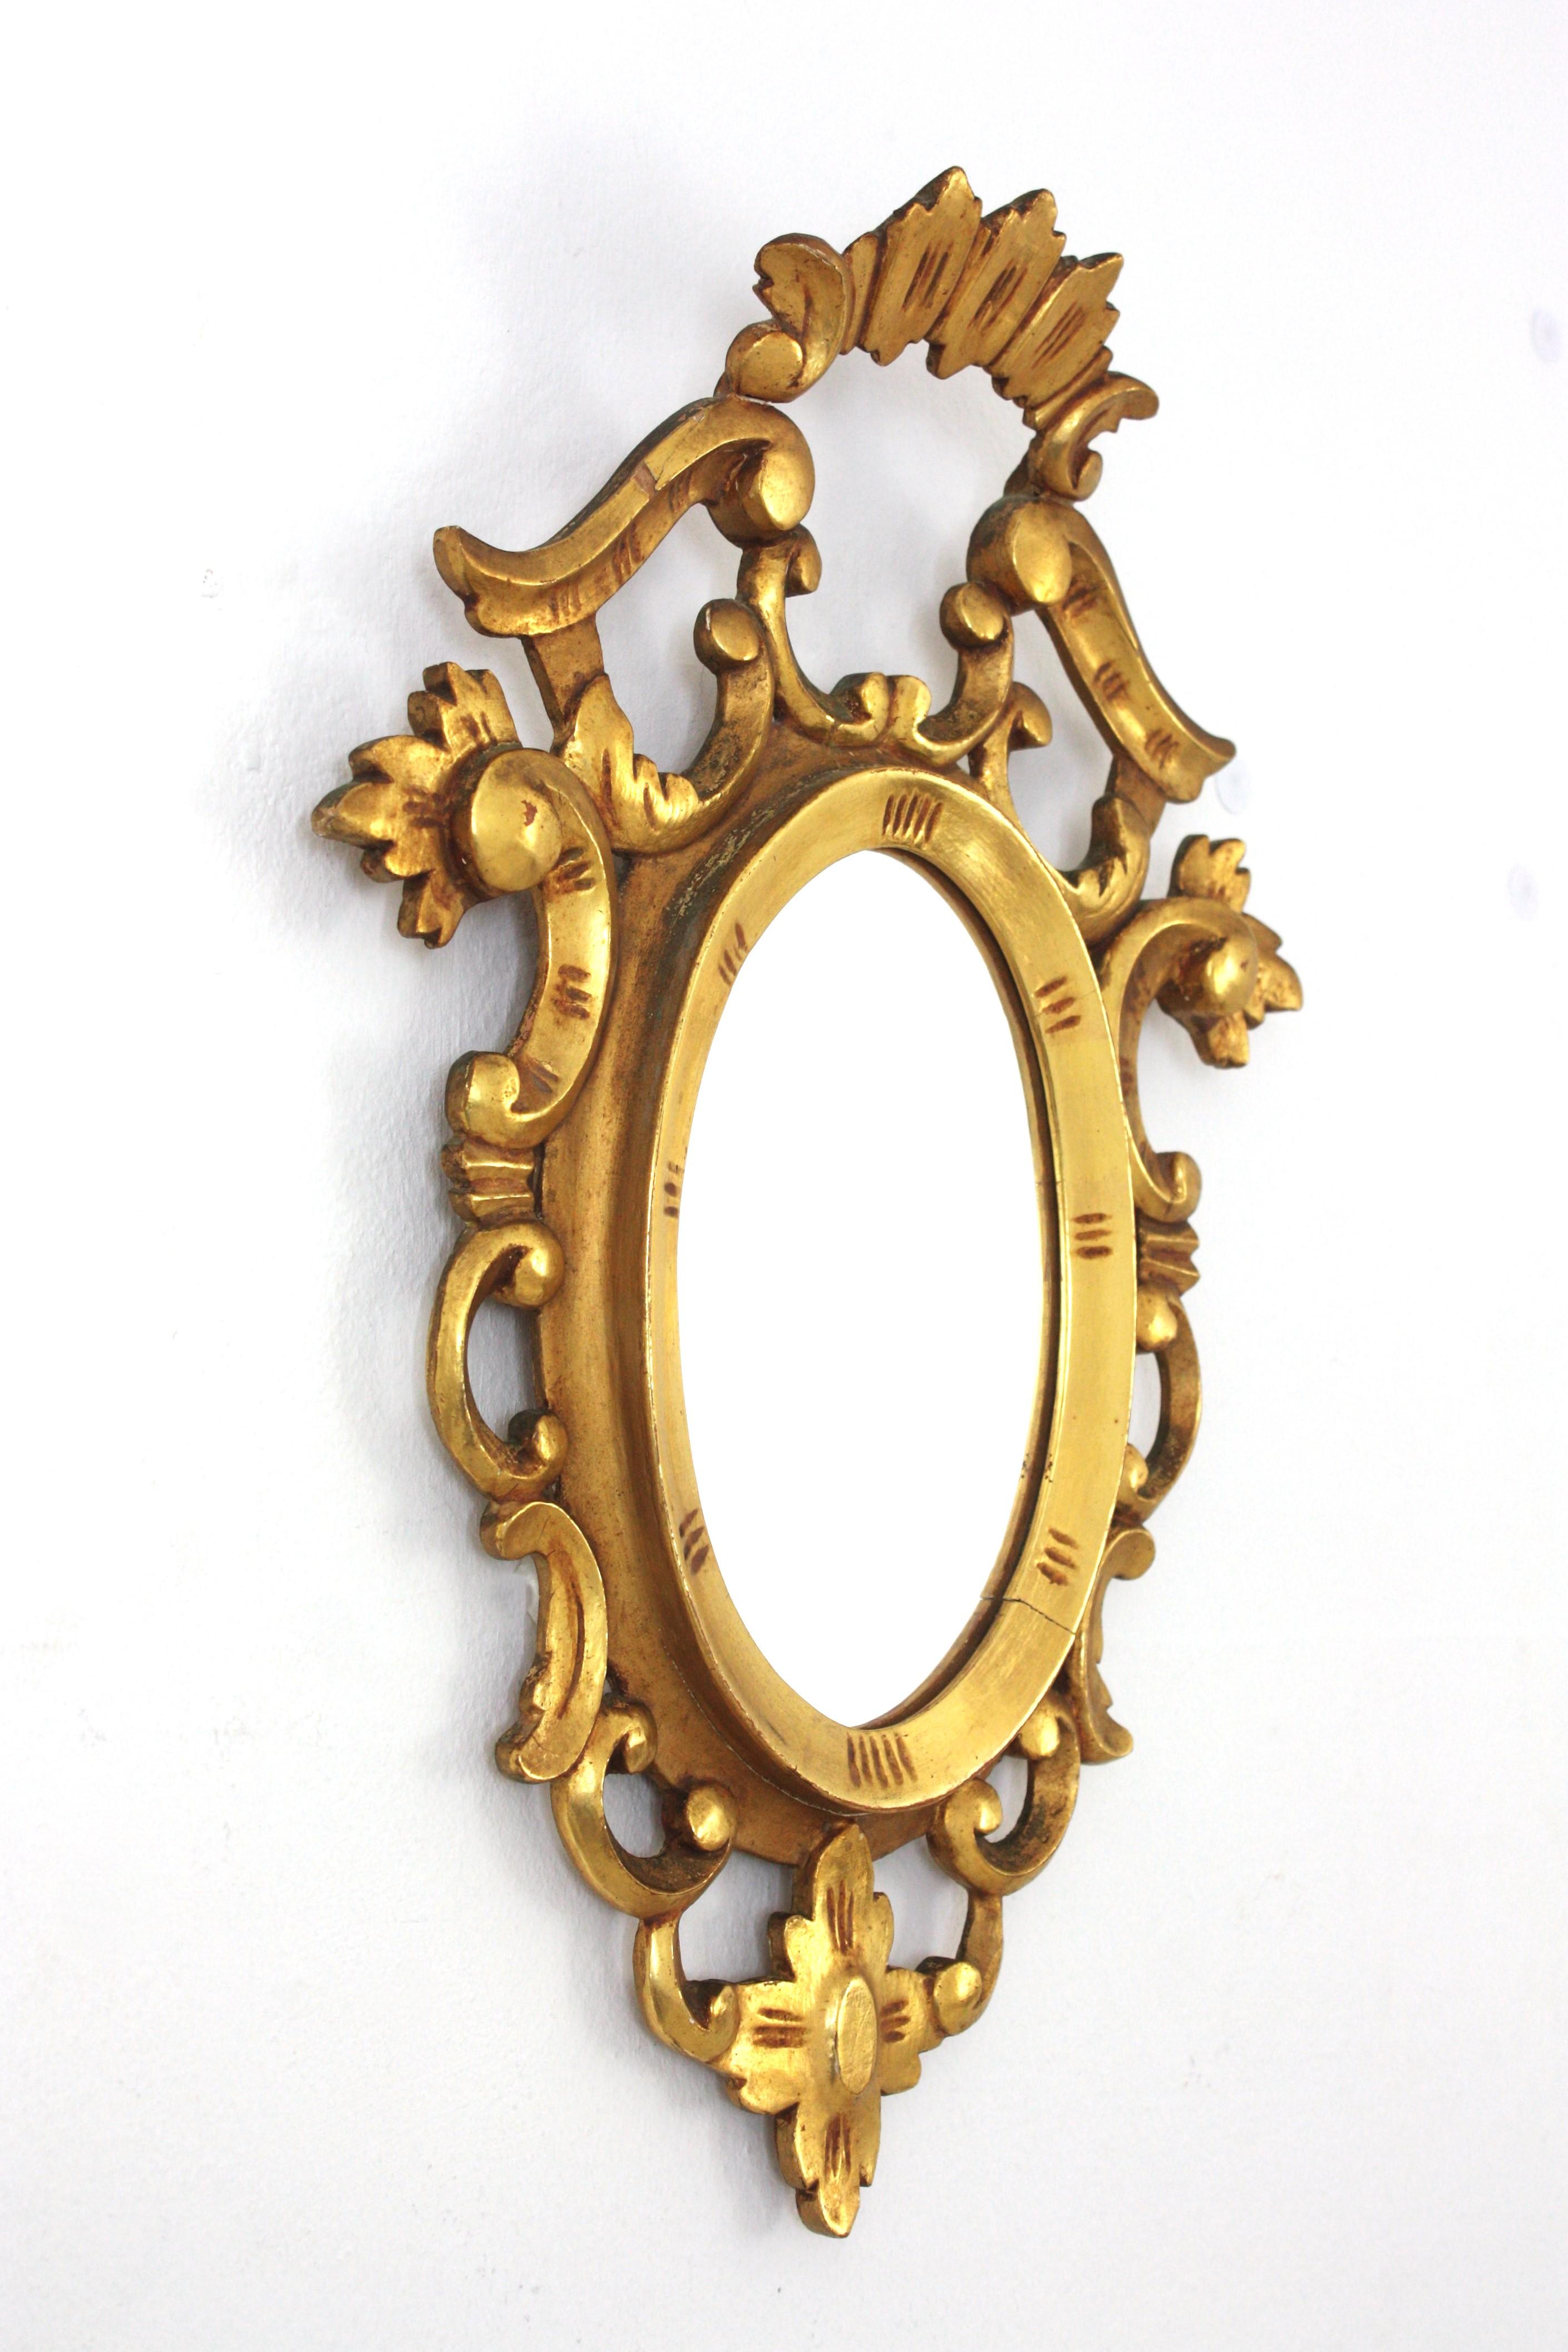 Rokoko-Spiegel, geschnitztes Vergoldungsholz, Spanien, 1930er Jahre.
Schöner kleiner geschnitzter Vergoldungsrahmen im Rokoko-Stil, der ein ovales Glas umgibt. Es hat ein schönes Wappen auf der Oberseite und naturalistische und verschnörkelte